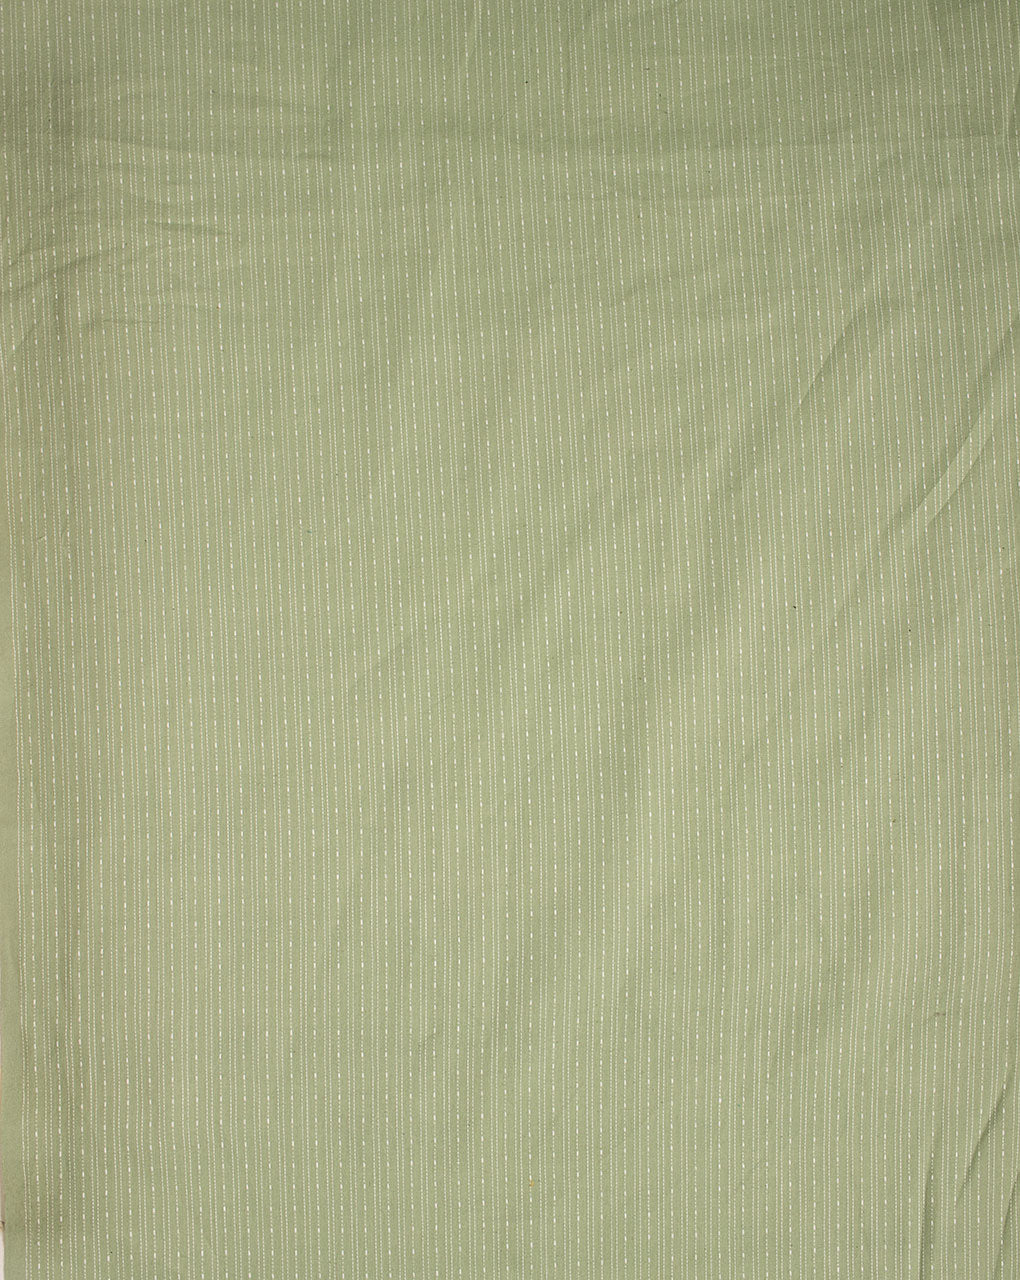 ( Pre Cut 90 CM ) Kantha Loom Textured Cotton Fabric